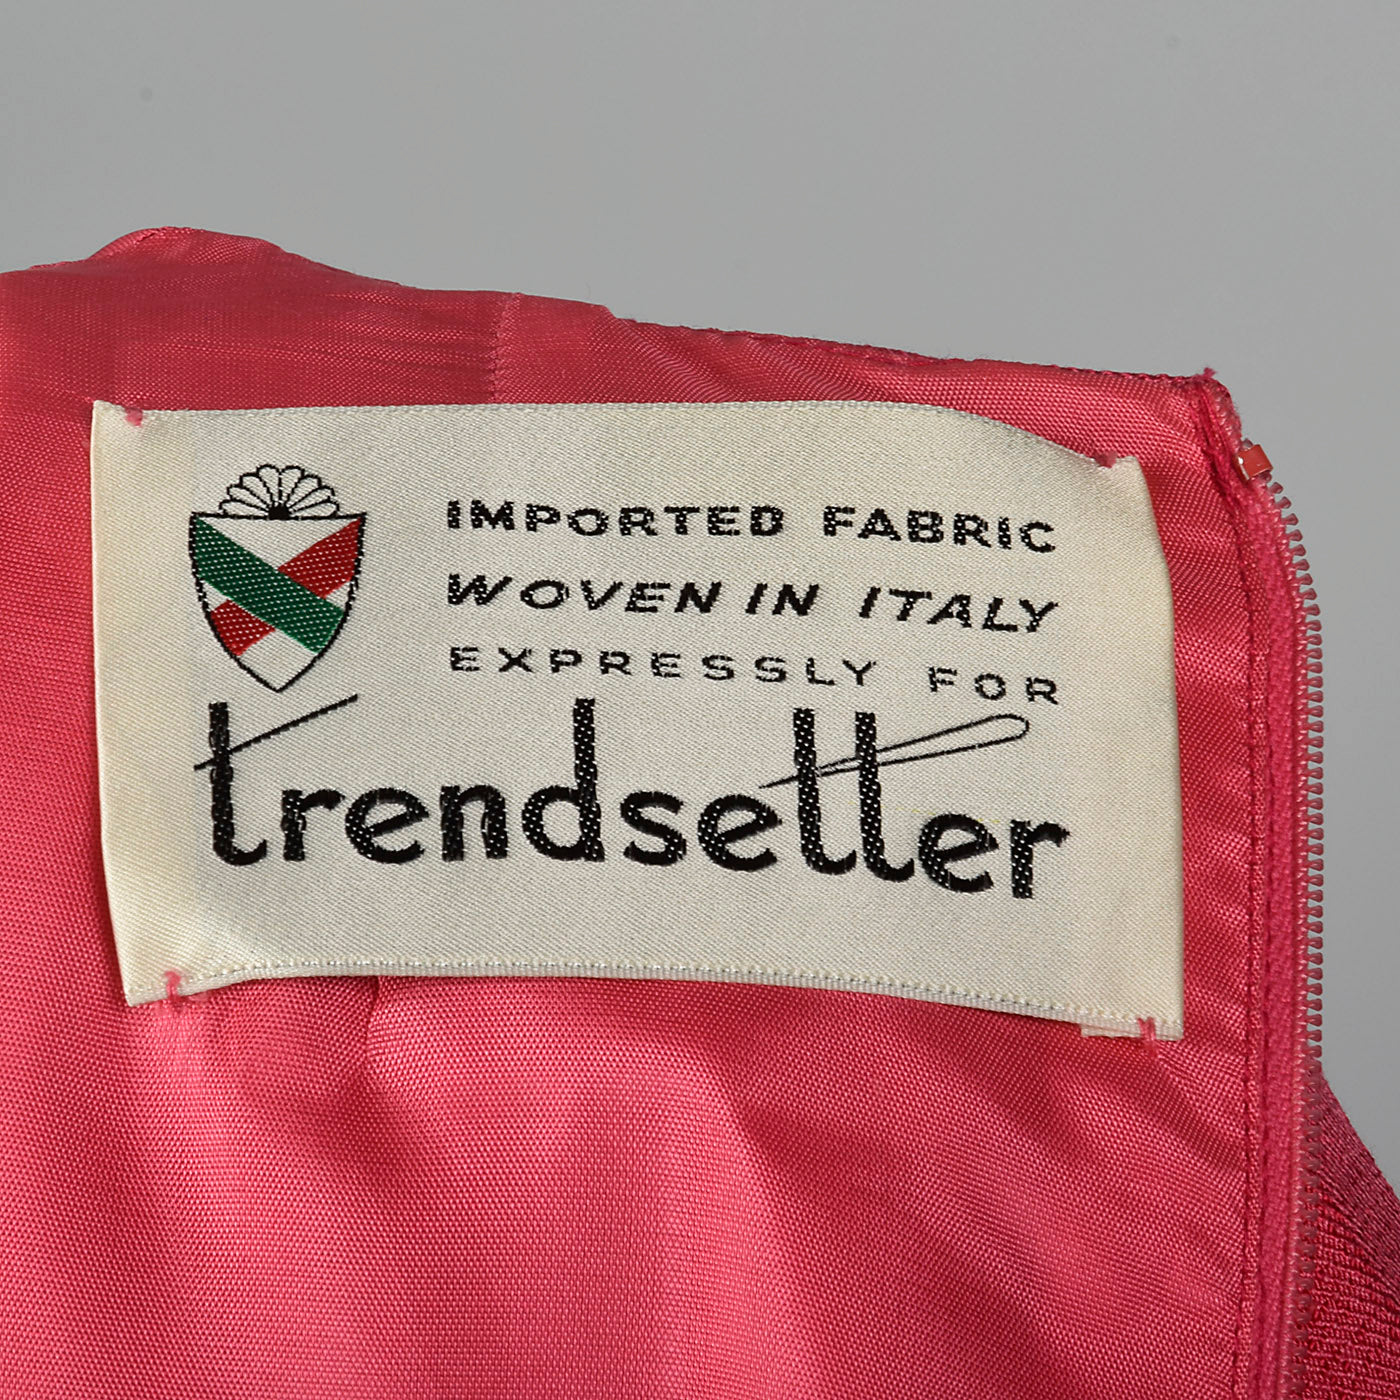 1960s Pink Linen Blend Shift Dress